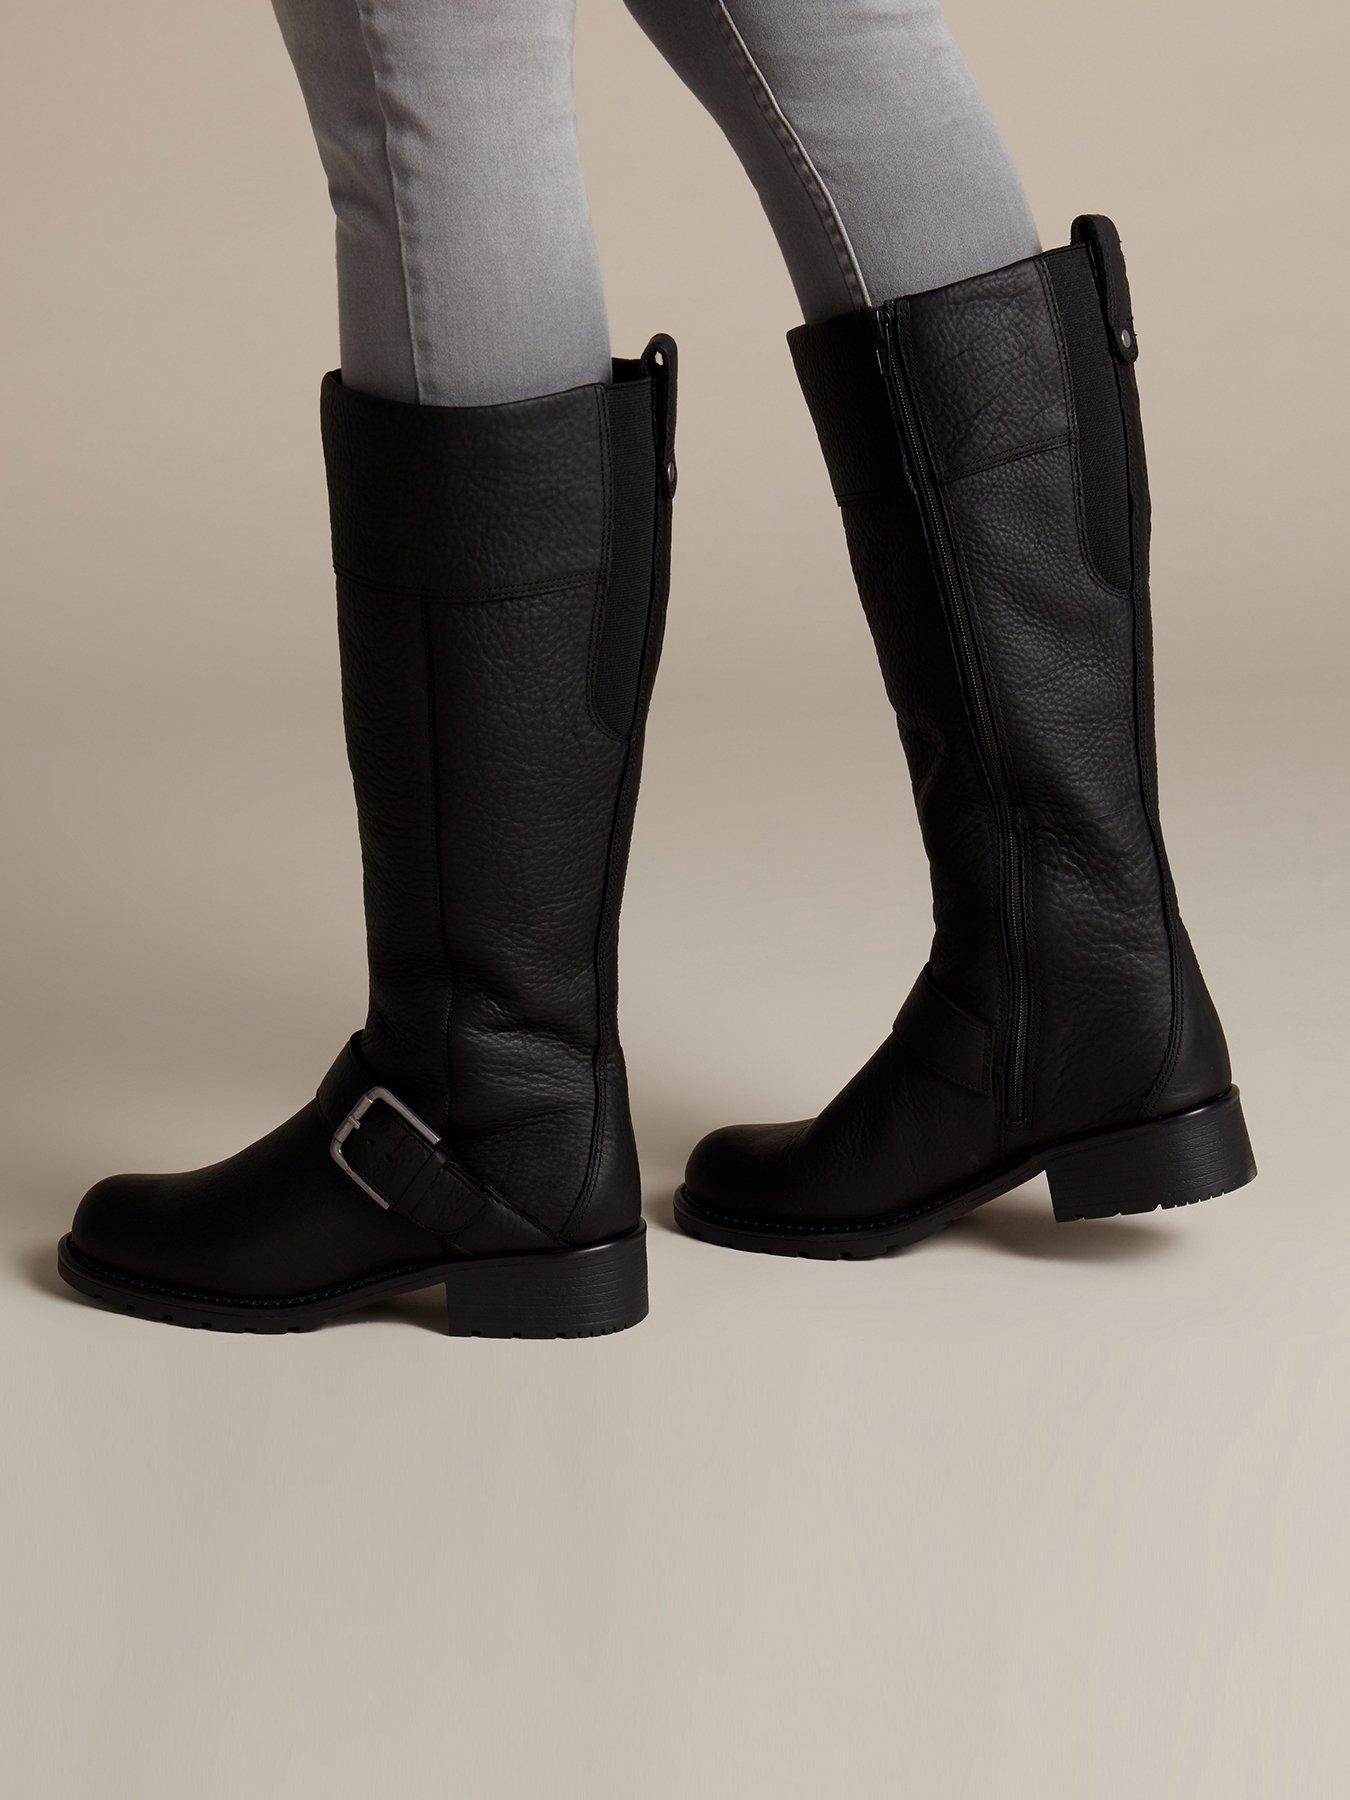 women's clarks boots black leather orinoco jazz